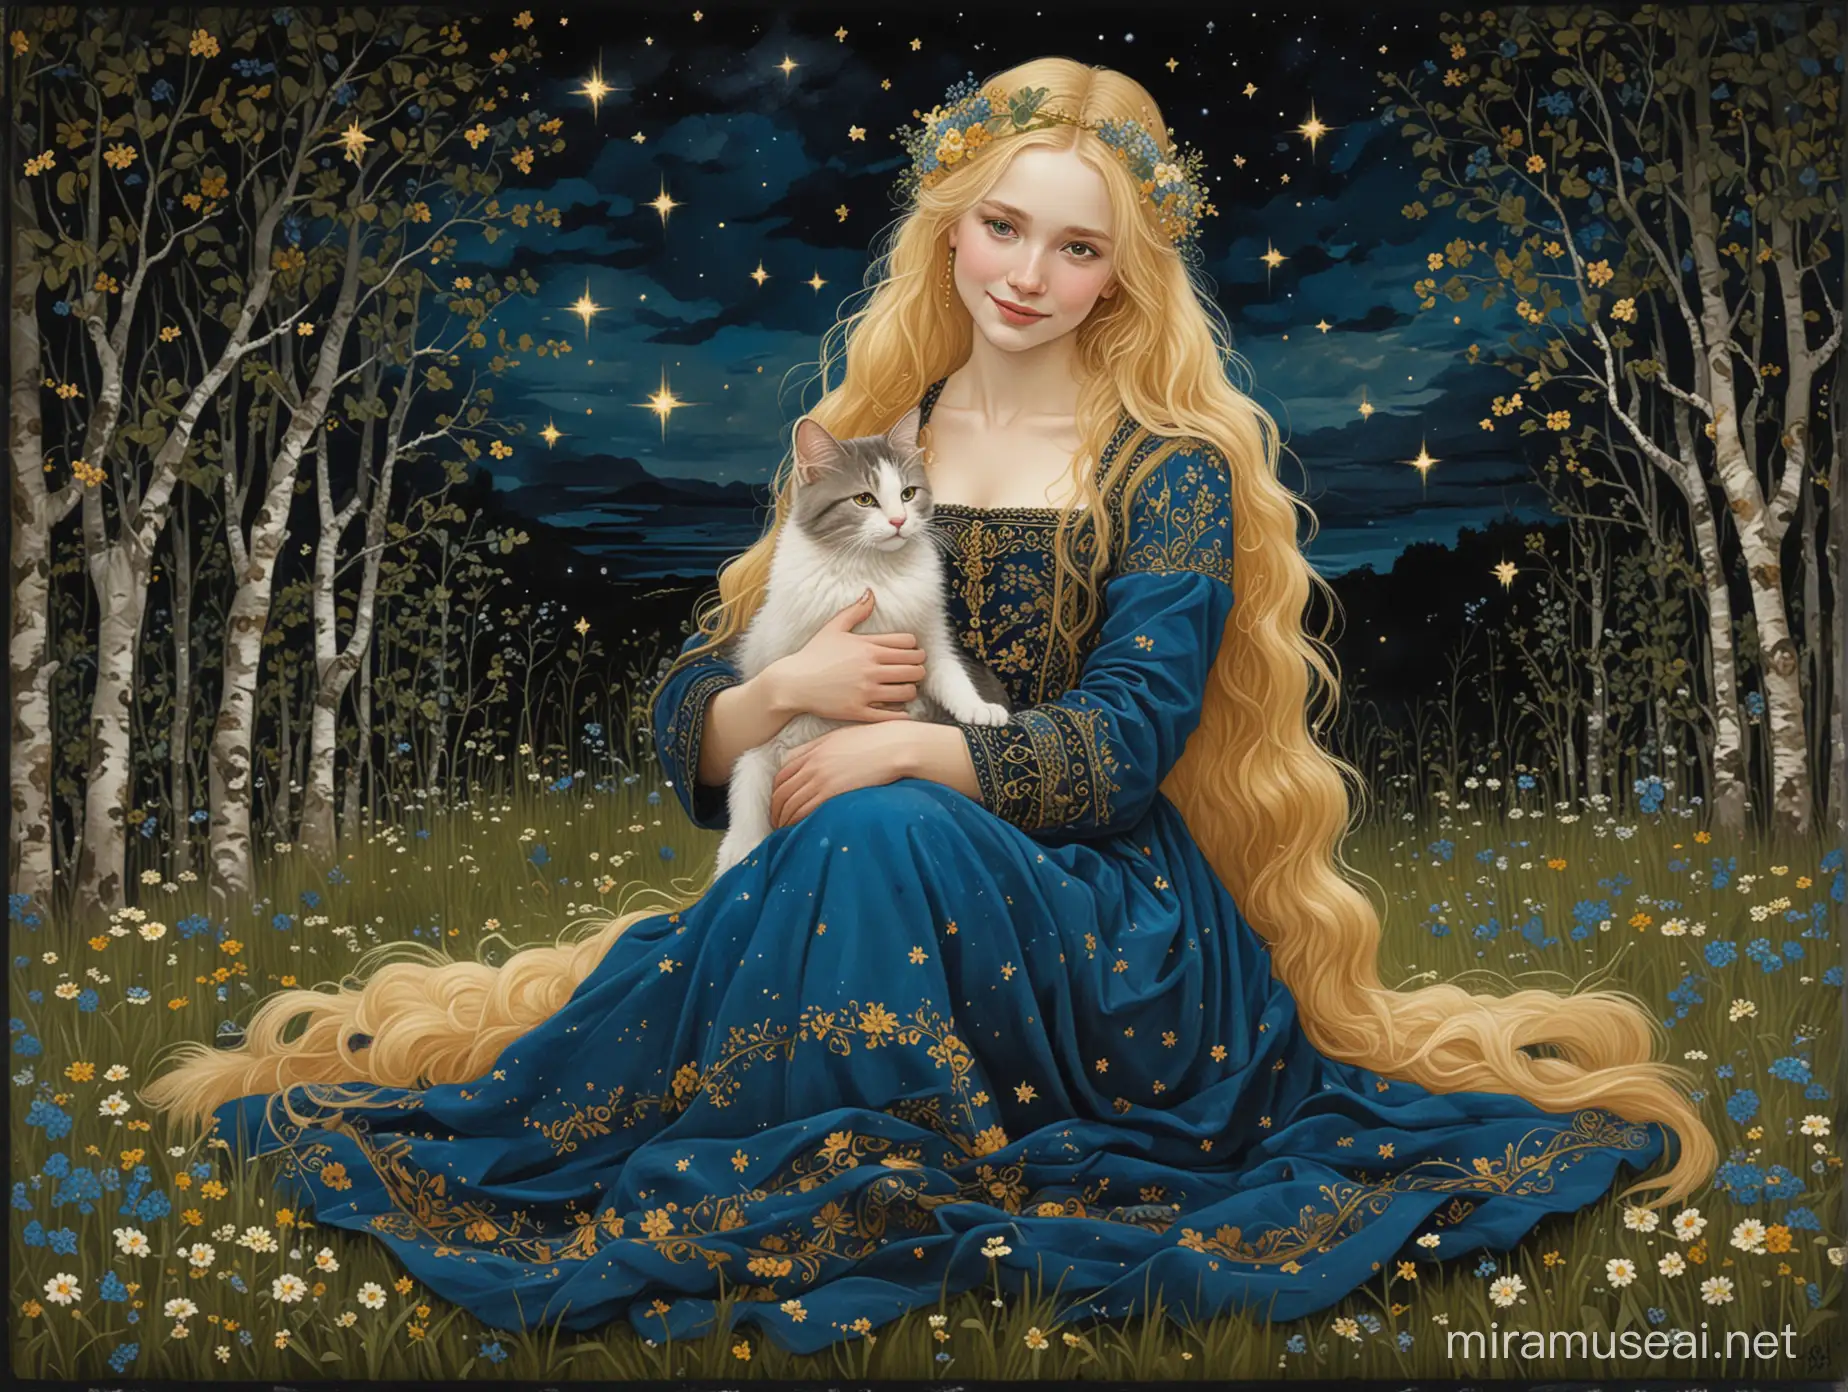 Grafika ma bordiury z floraturami w stylu celtyckim. Grafika jest w stylu malarskim Gustava Klimta. Grafika przedstawia młodą, usmiechniętą, piękną, jasnowłosa, średniowieczną kobietę w błekitnej sukience, która siedzi na kwietnej trawie i trzyma na kolanach norweskiego kota leśnego. Jest noc i na ciemnym niebie świecą tylko gwiazdy. W tle brzozowy zagajnik i odległe morze.